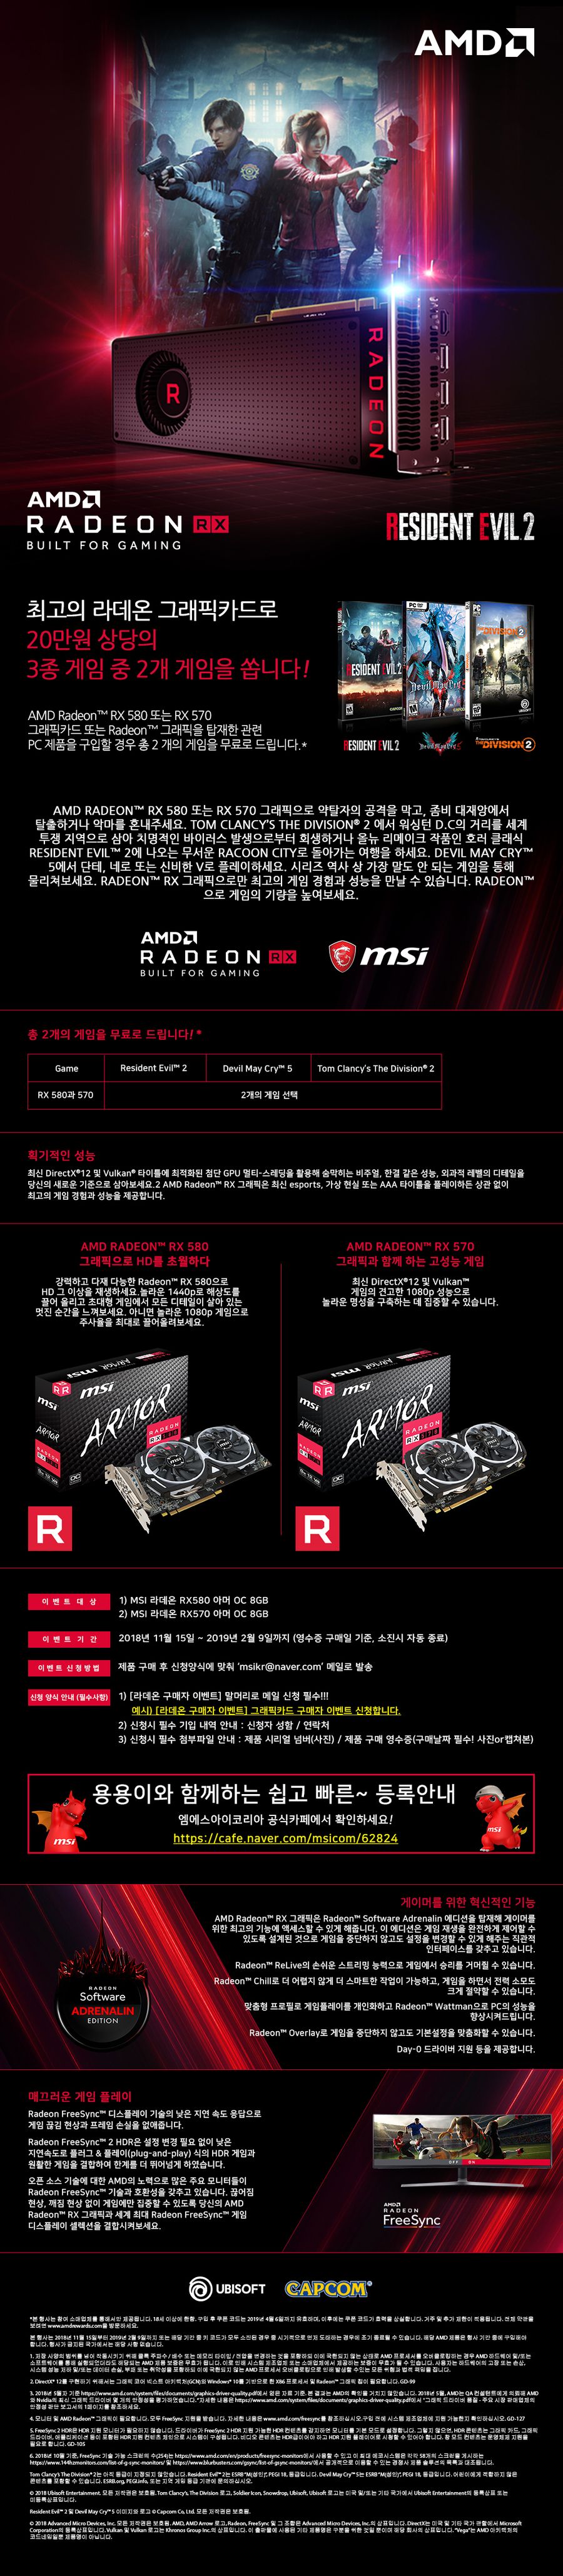 2 AMD소녀장패드와 최신기대작 게임 2종까지! ’MSI 라데온 RX 580 570 아머’는 선물이 펑펑!.jpg